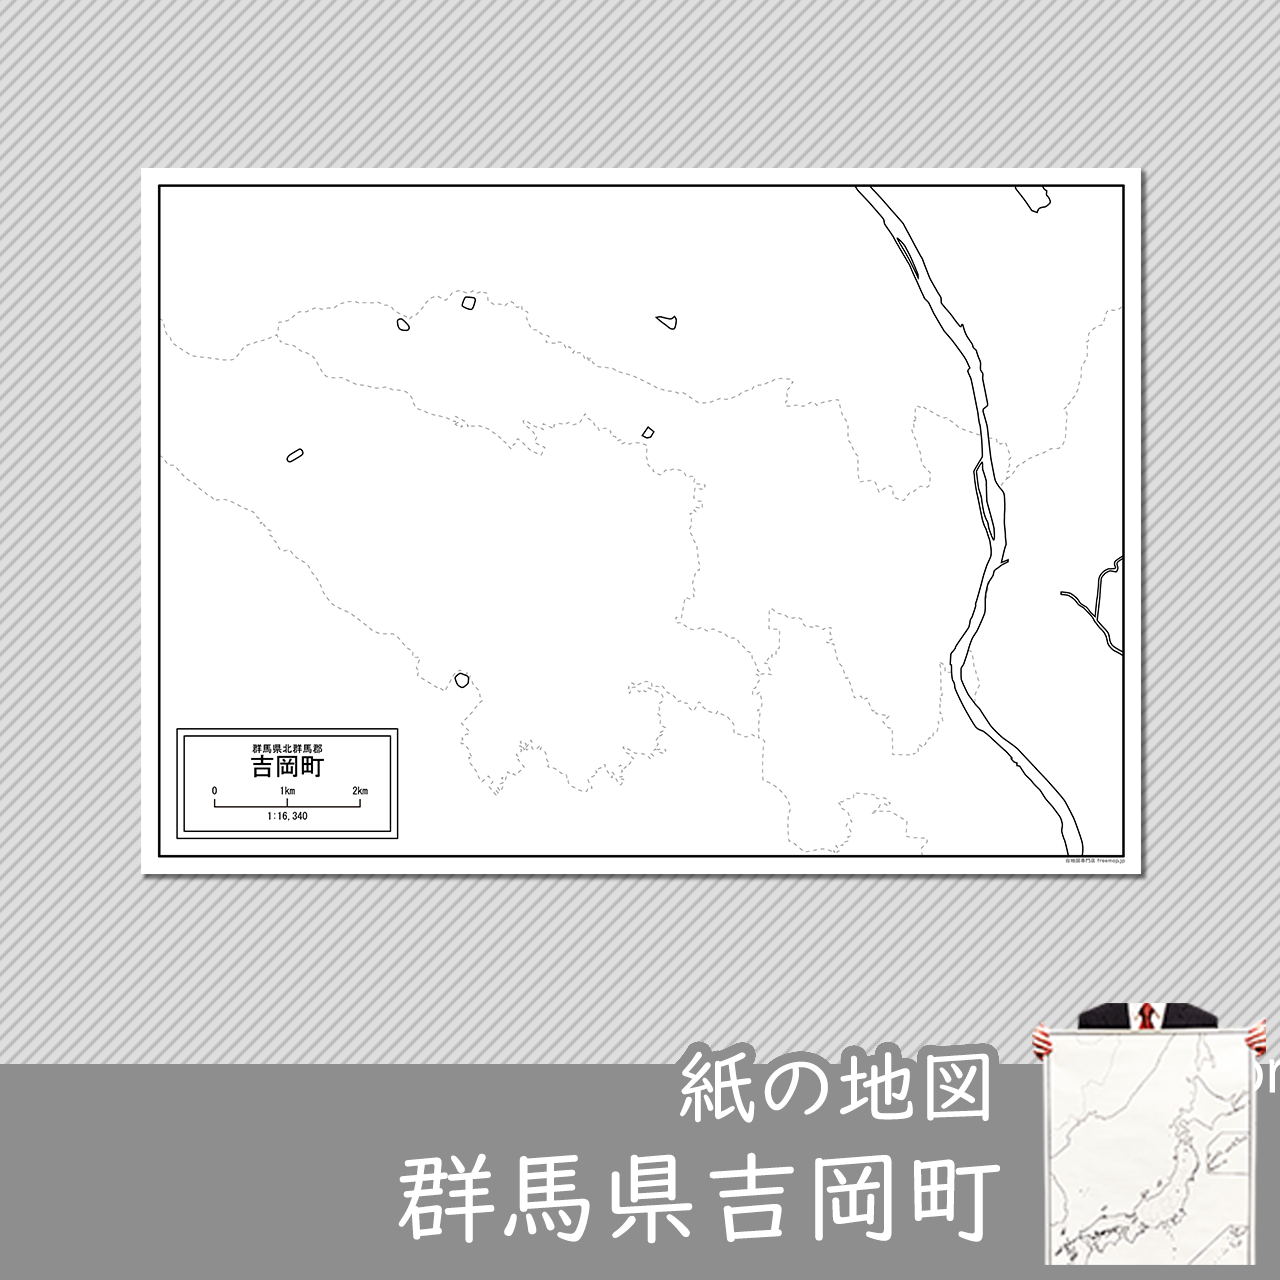 吉岡町の紙の白地図のサムネイル